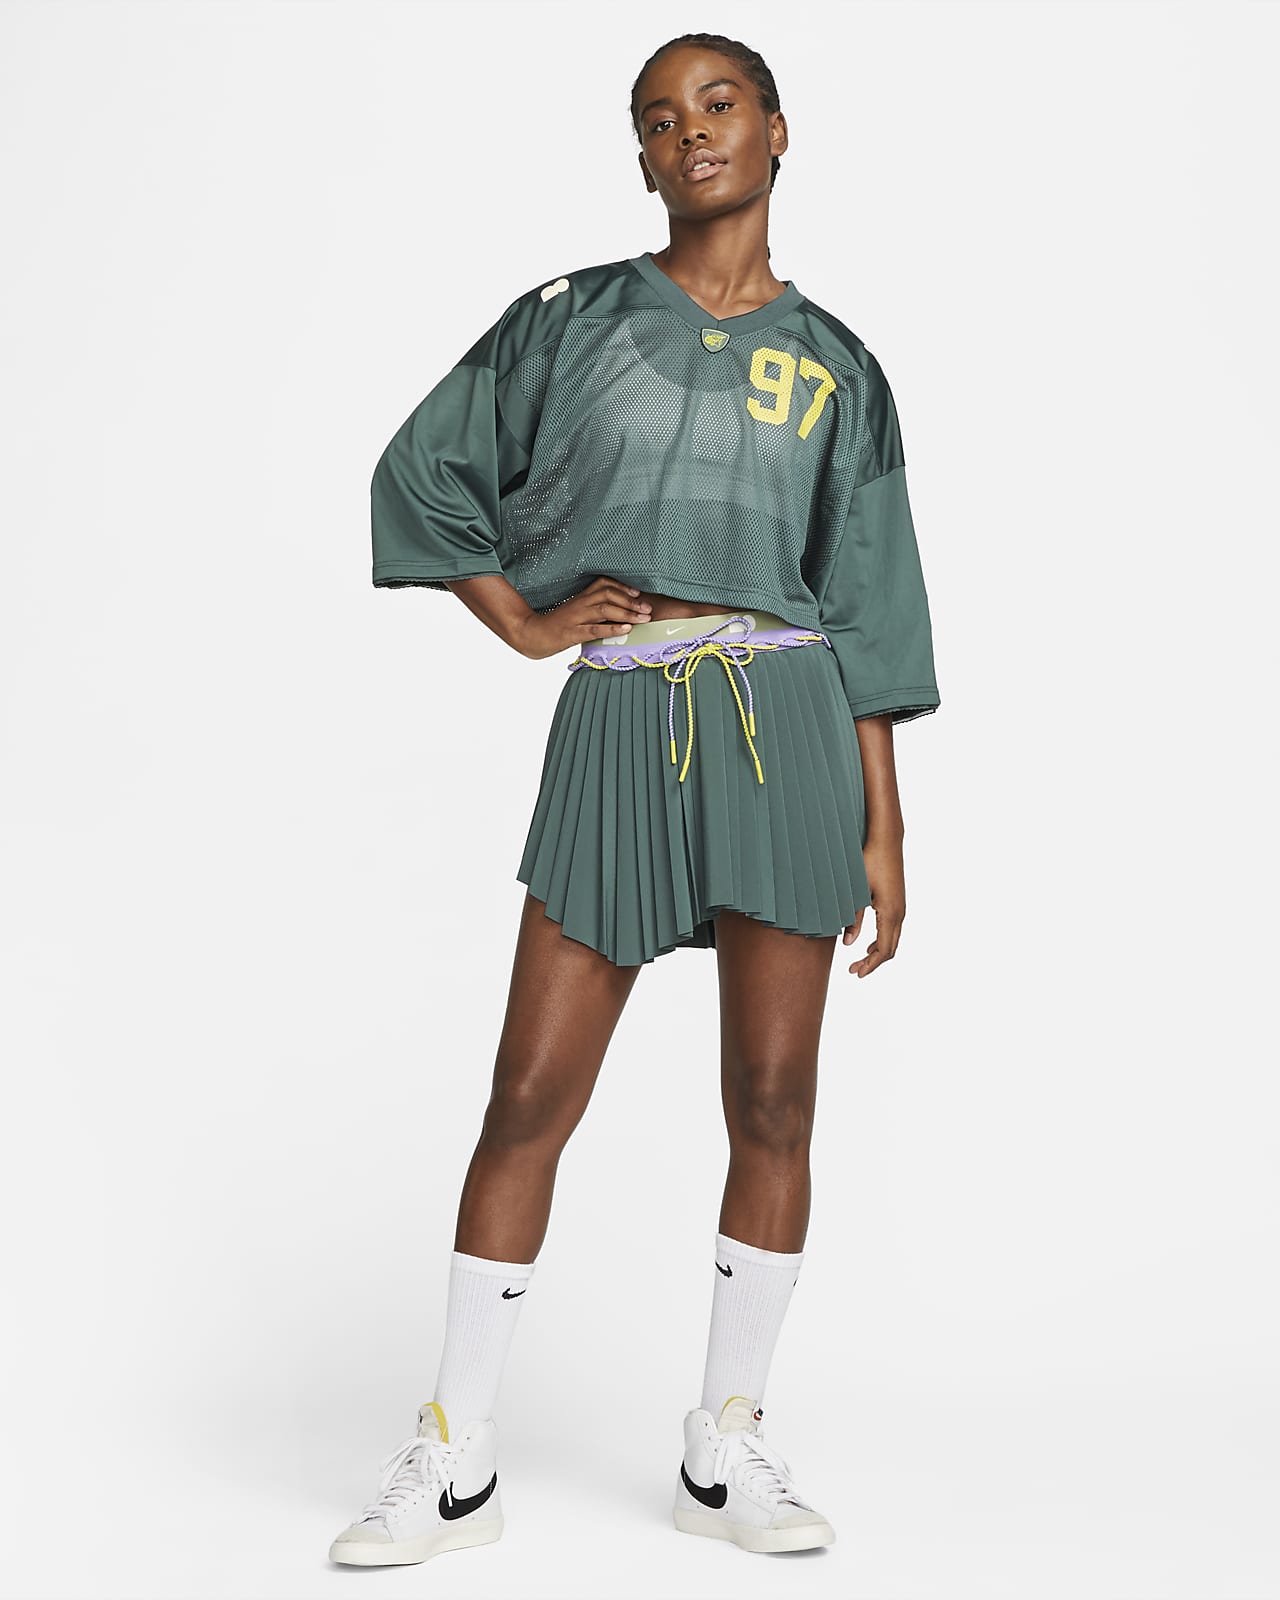 Osaka Women's Jersey. Nike.com